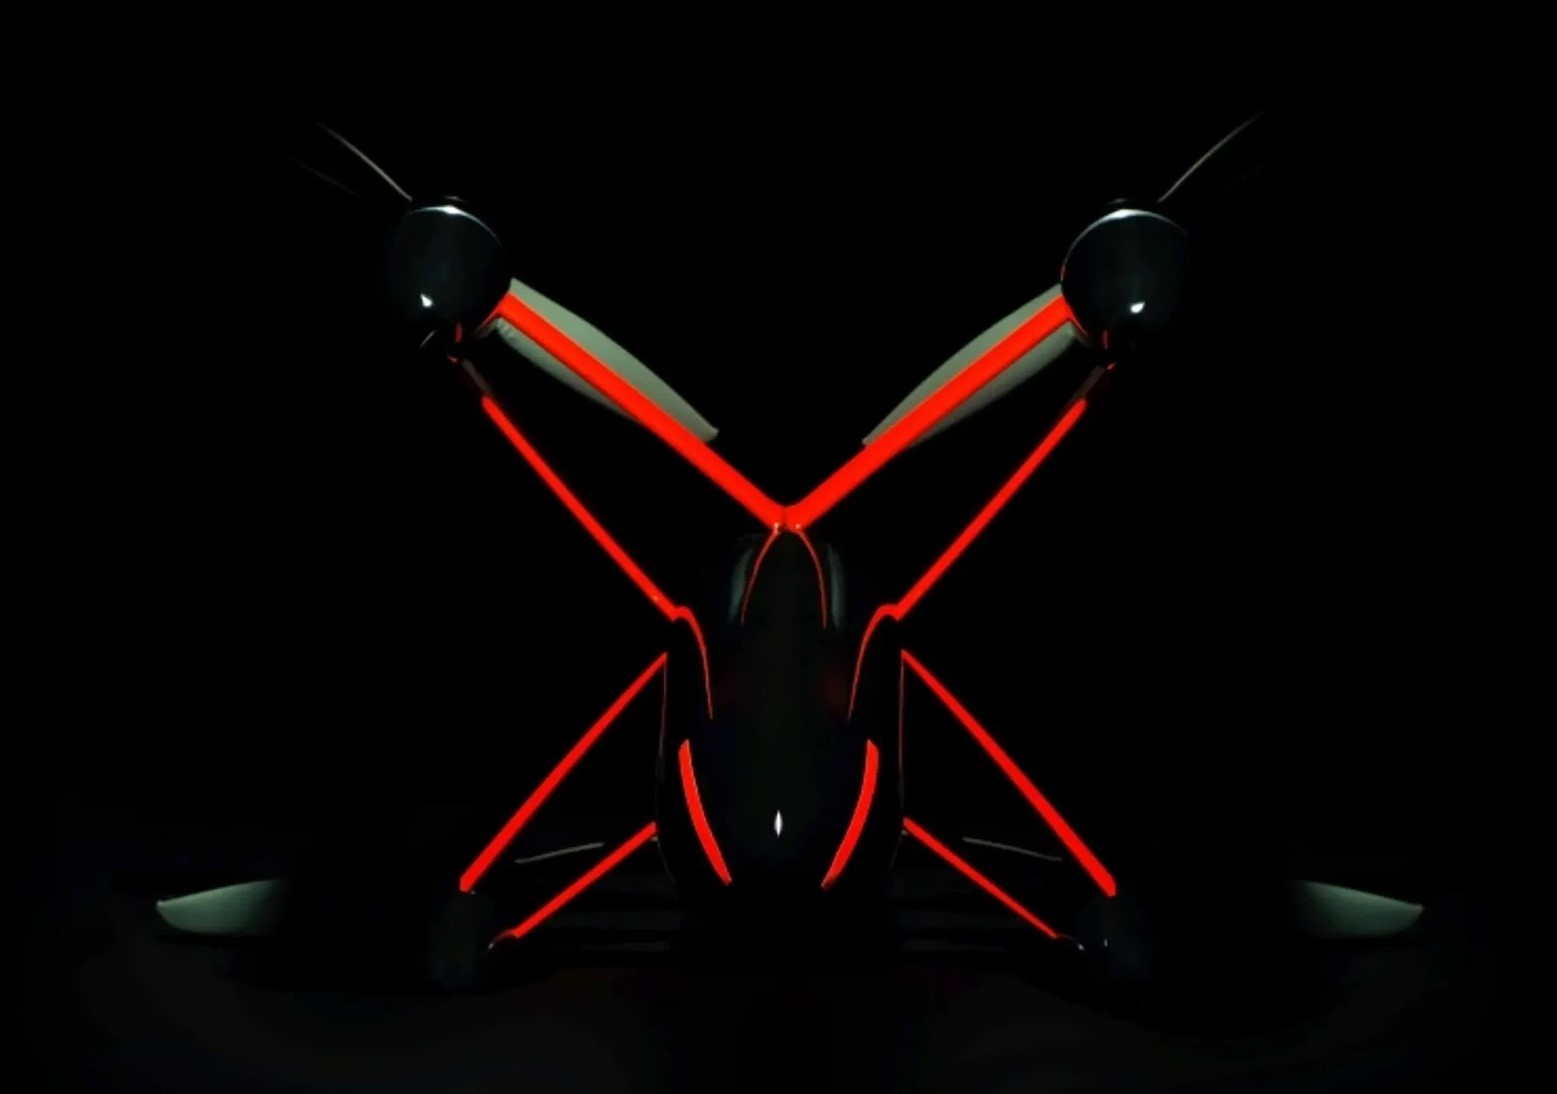 Oto najszybszy dron na świecie. Pobił właśnie rekord Guinnessa